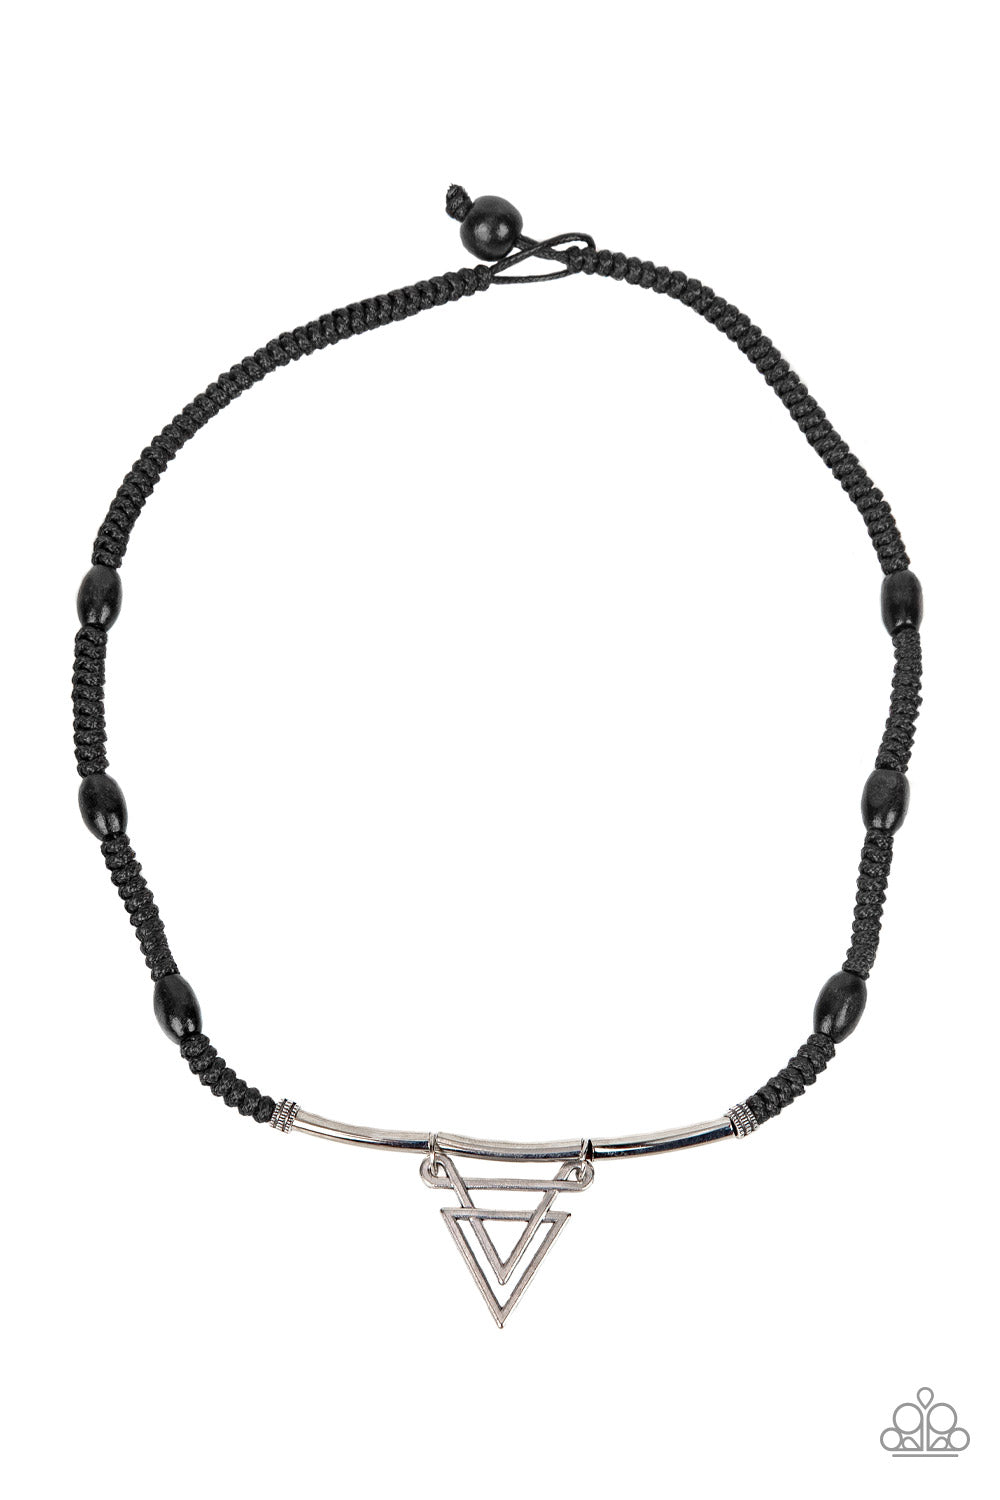 Arrowed Admiral - black - Paparazzi MENS necklace